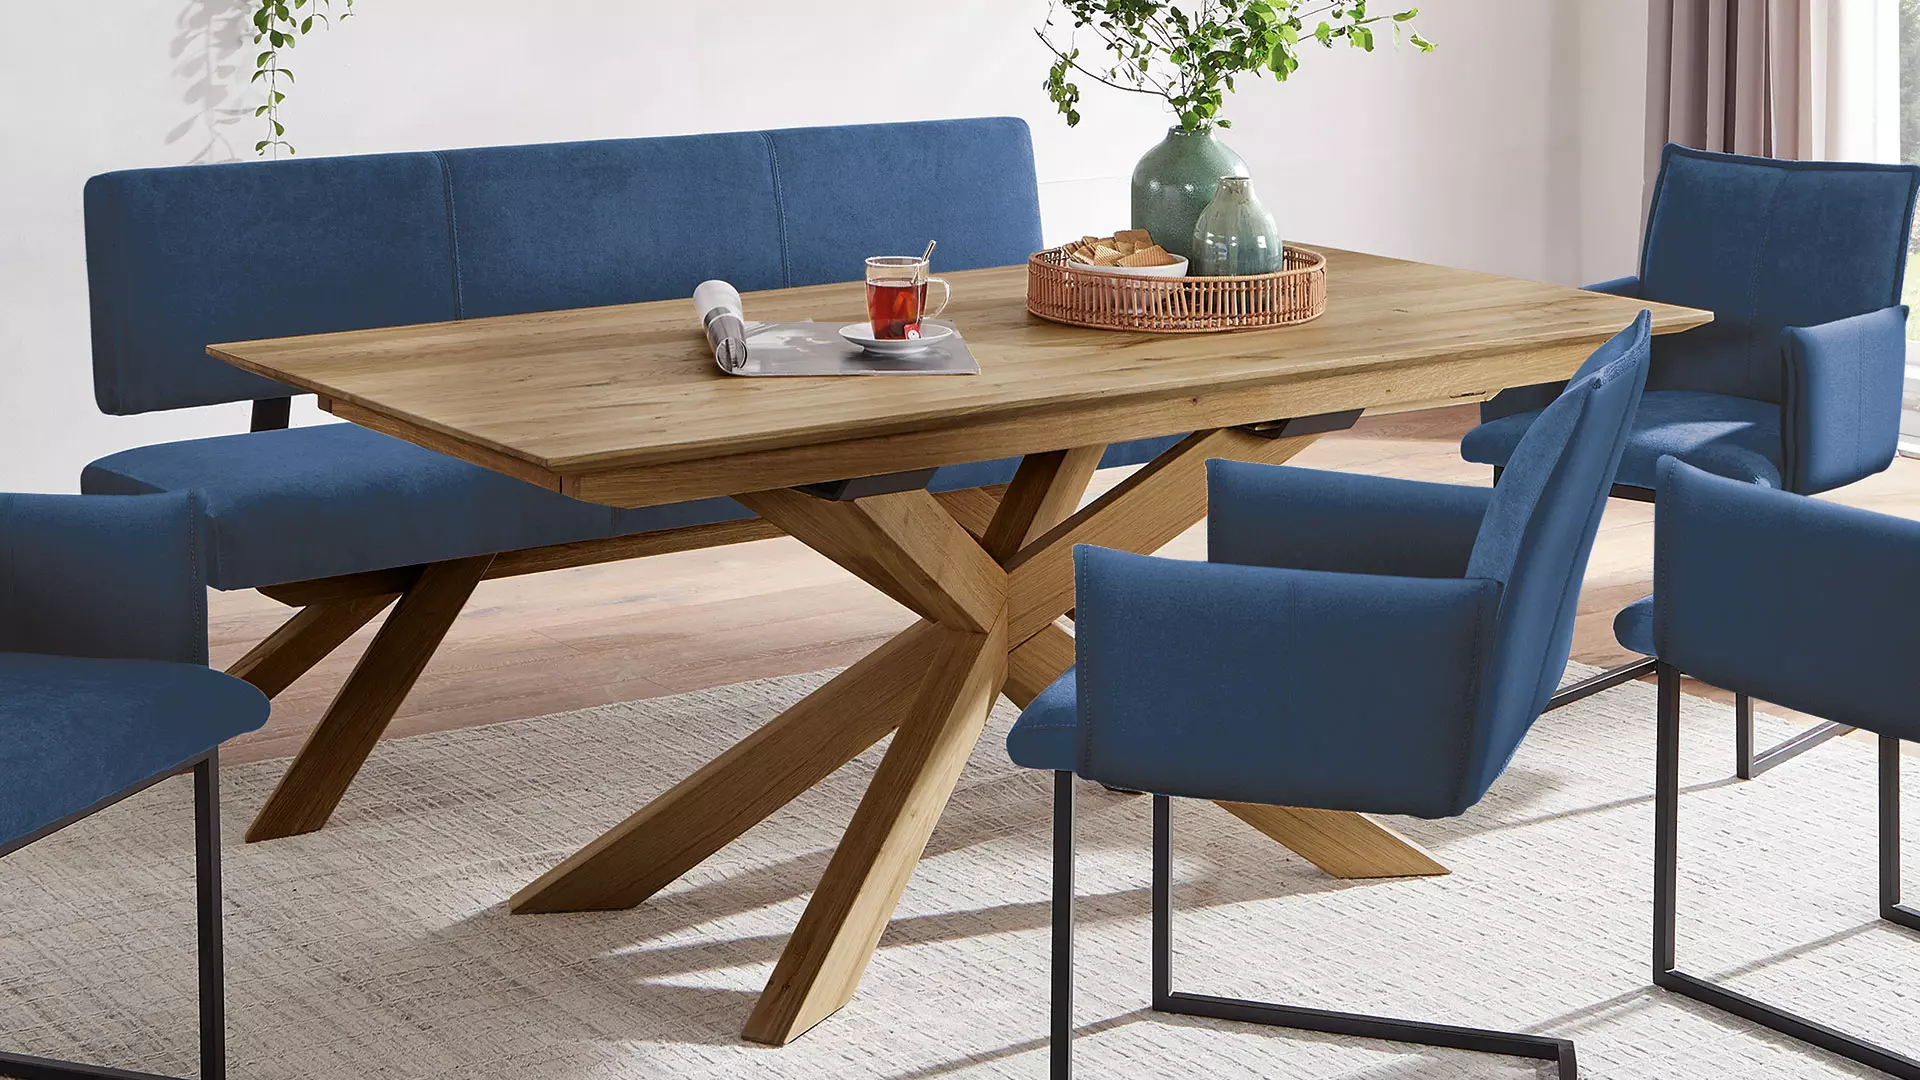 Aurana-Estenda tafel in ongewoon design met veel beenruimte